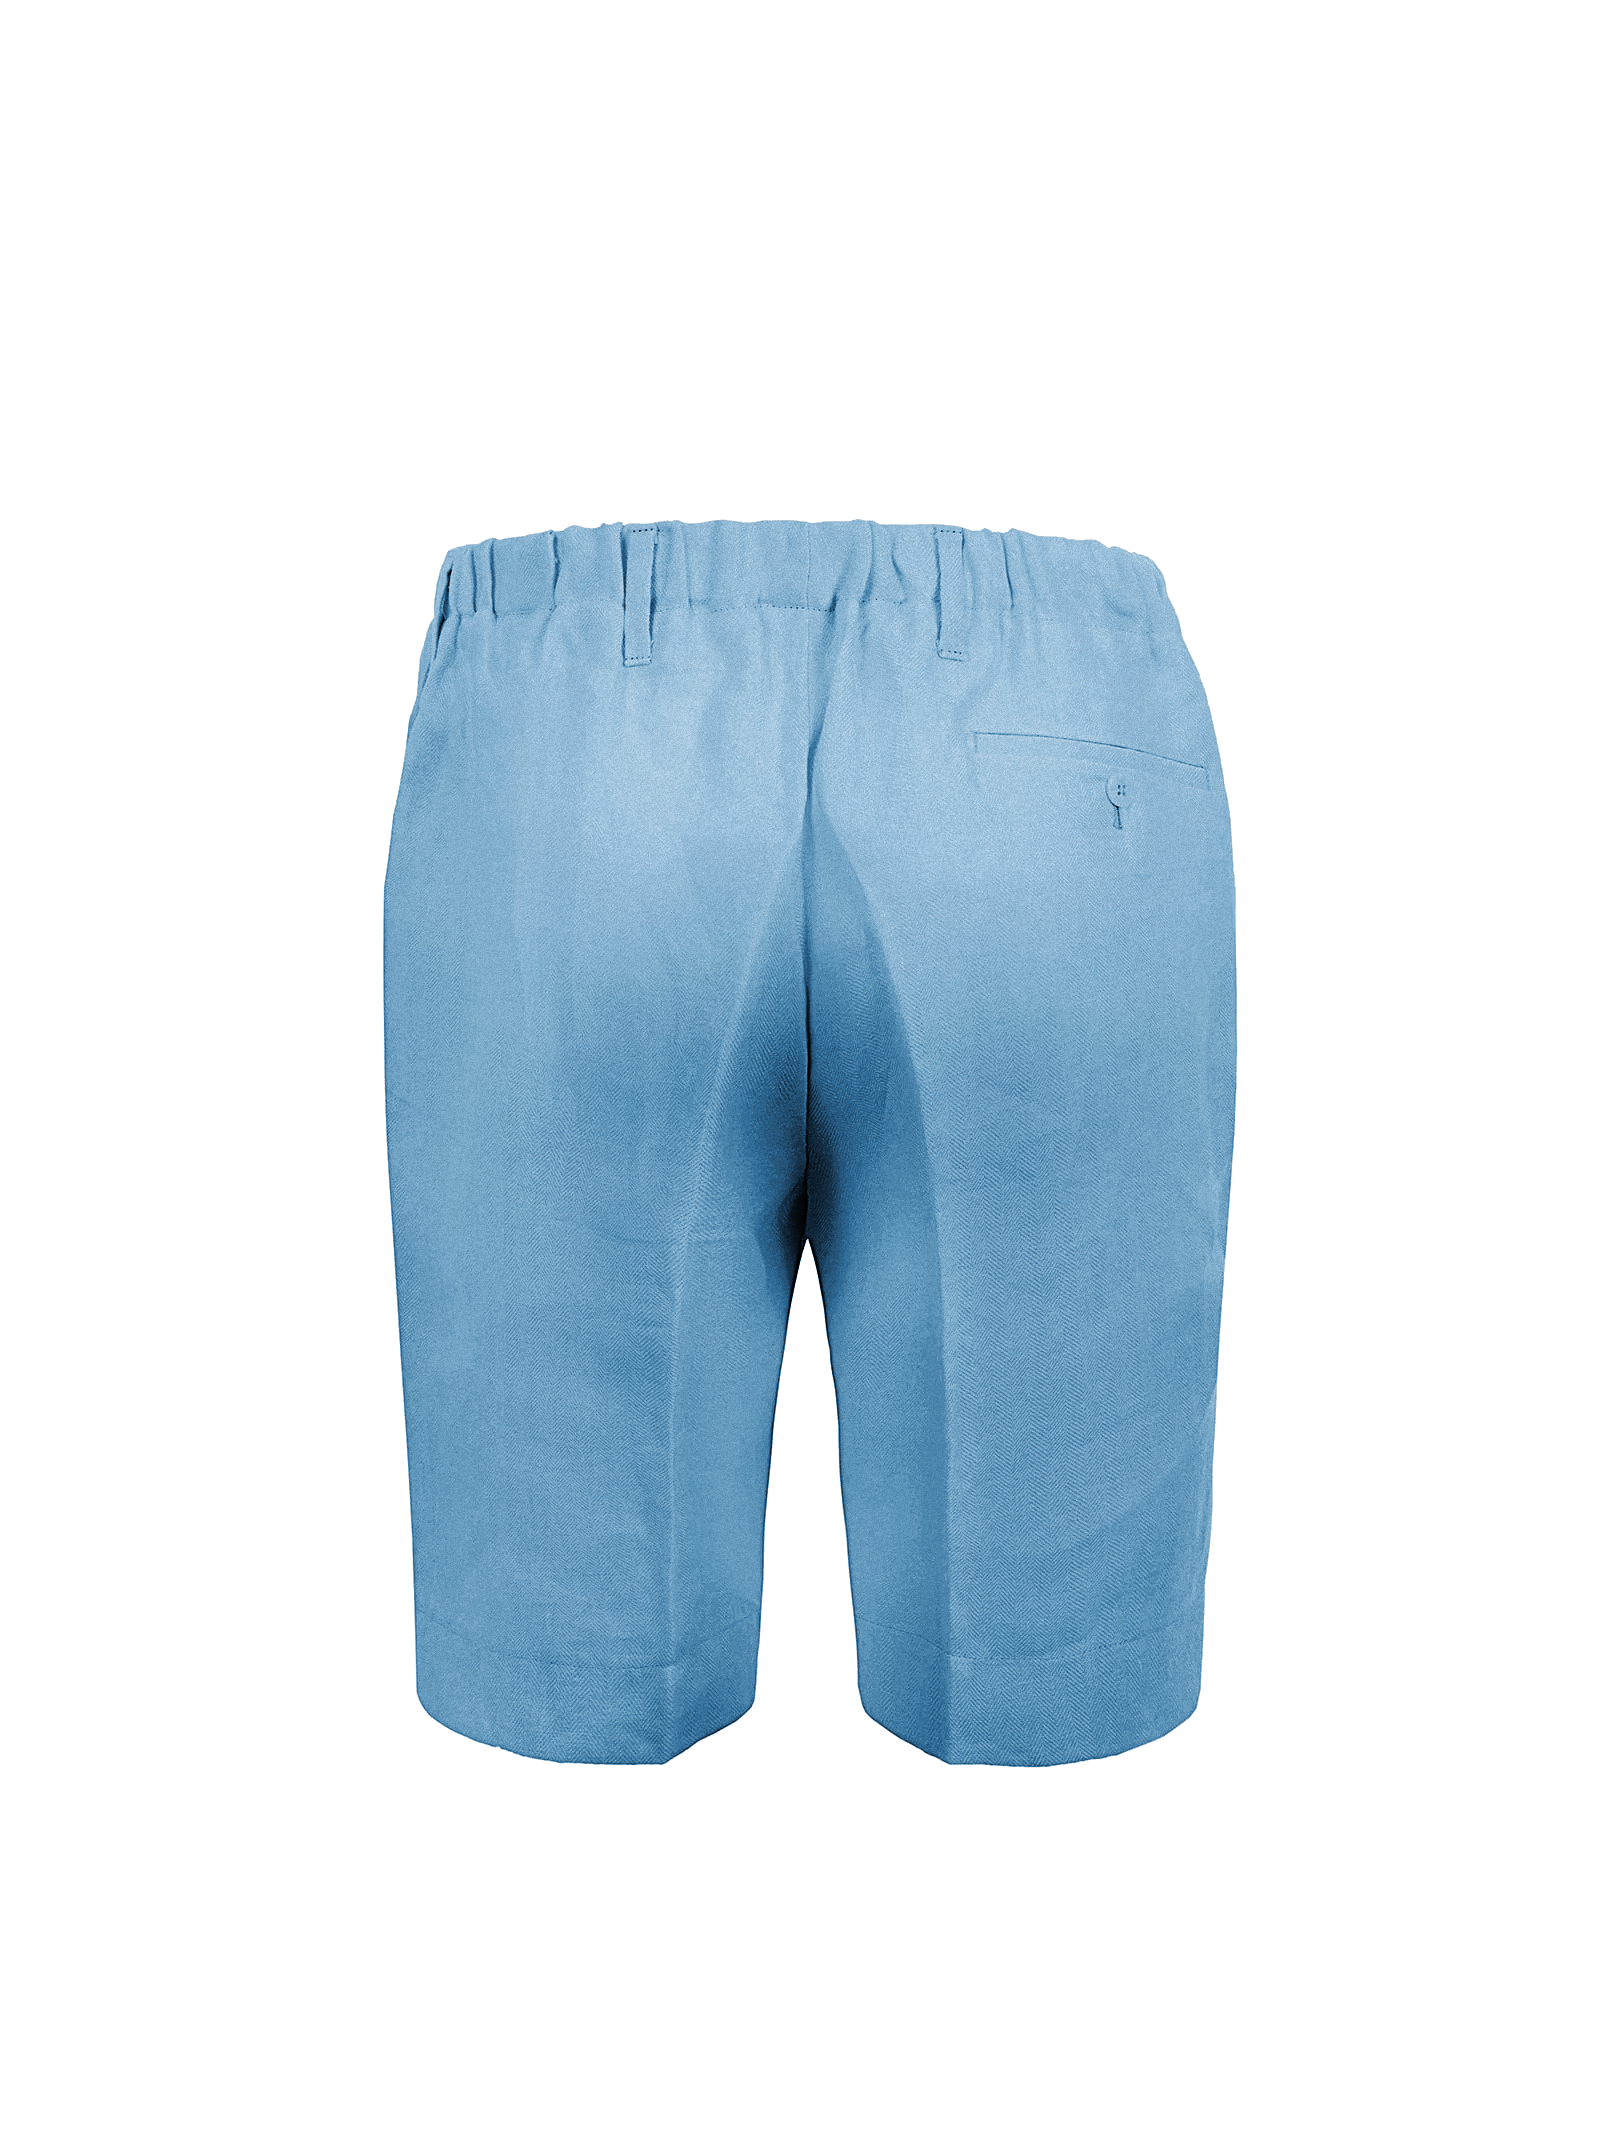 Bermuda Capri for men 100% Capri jeanslinen pant back